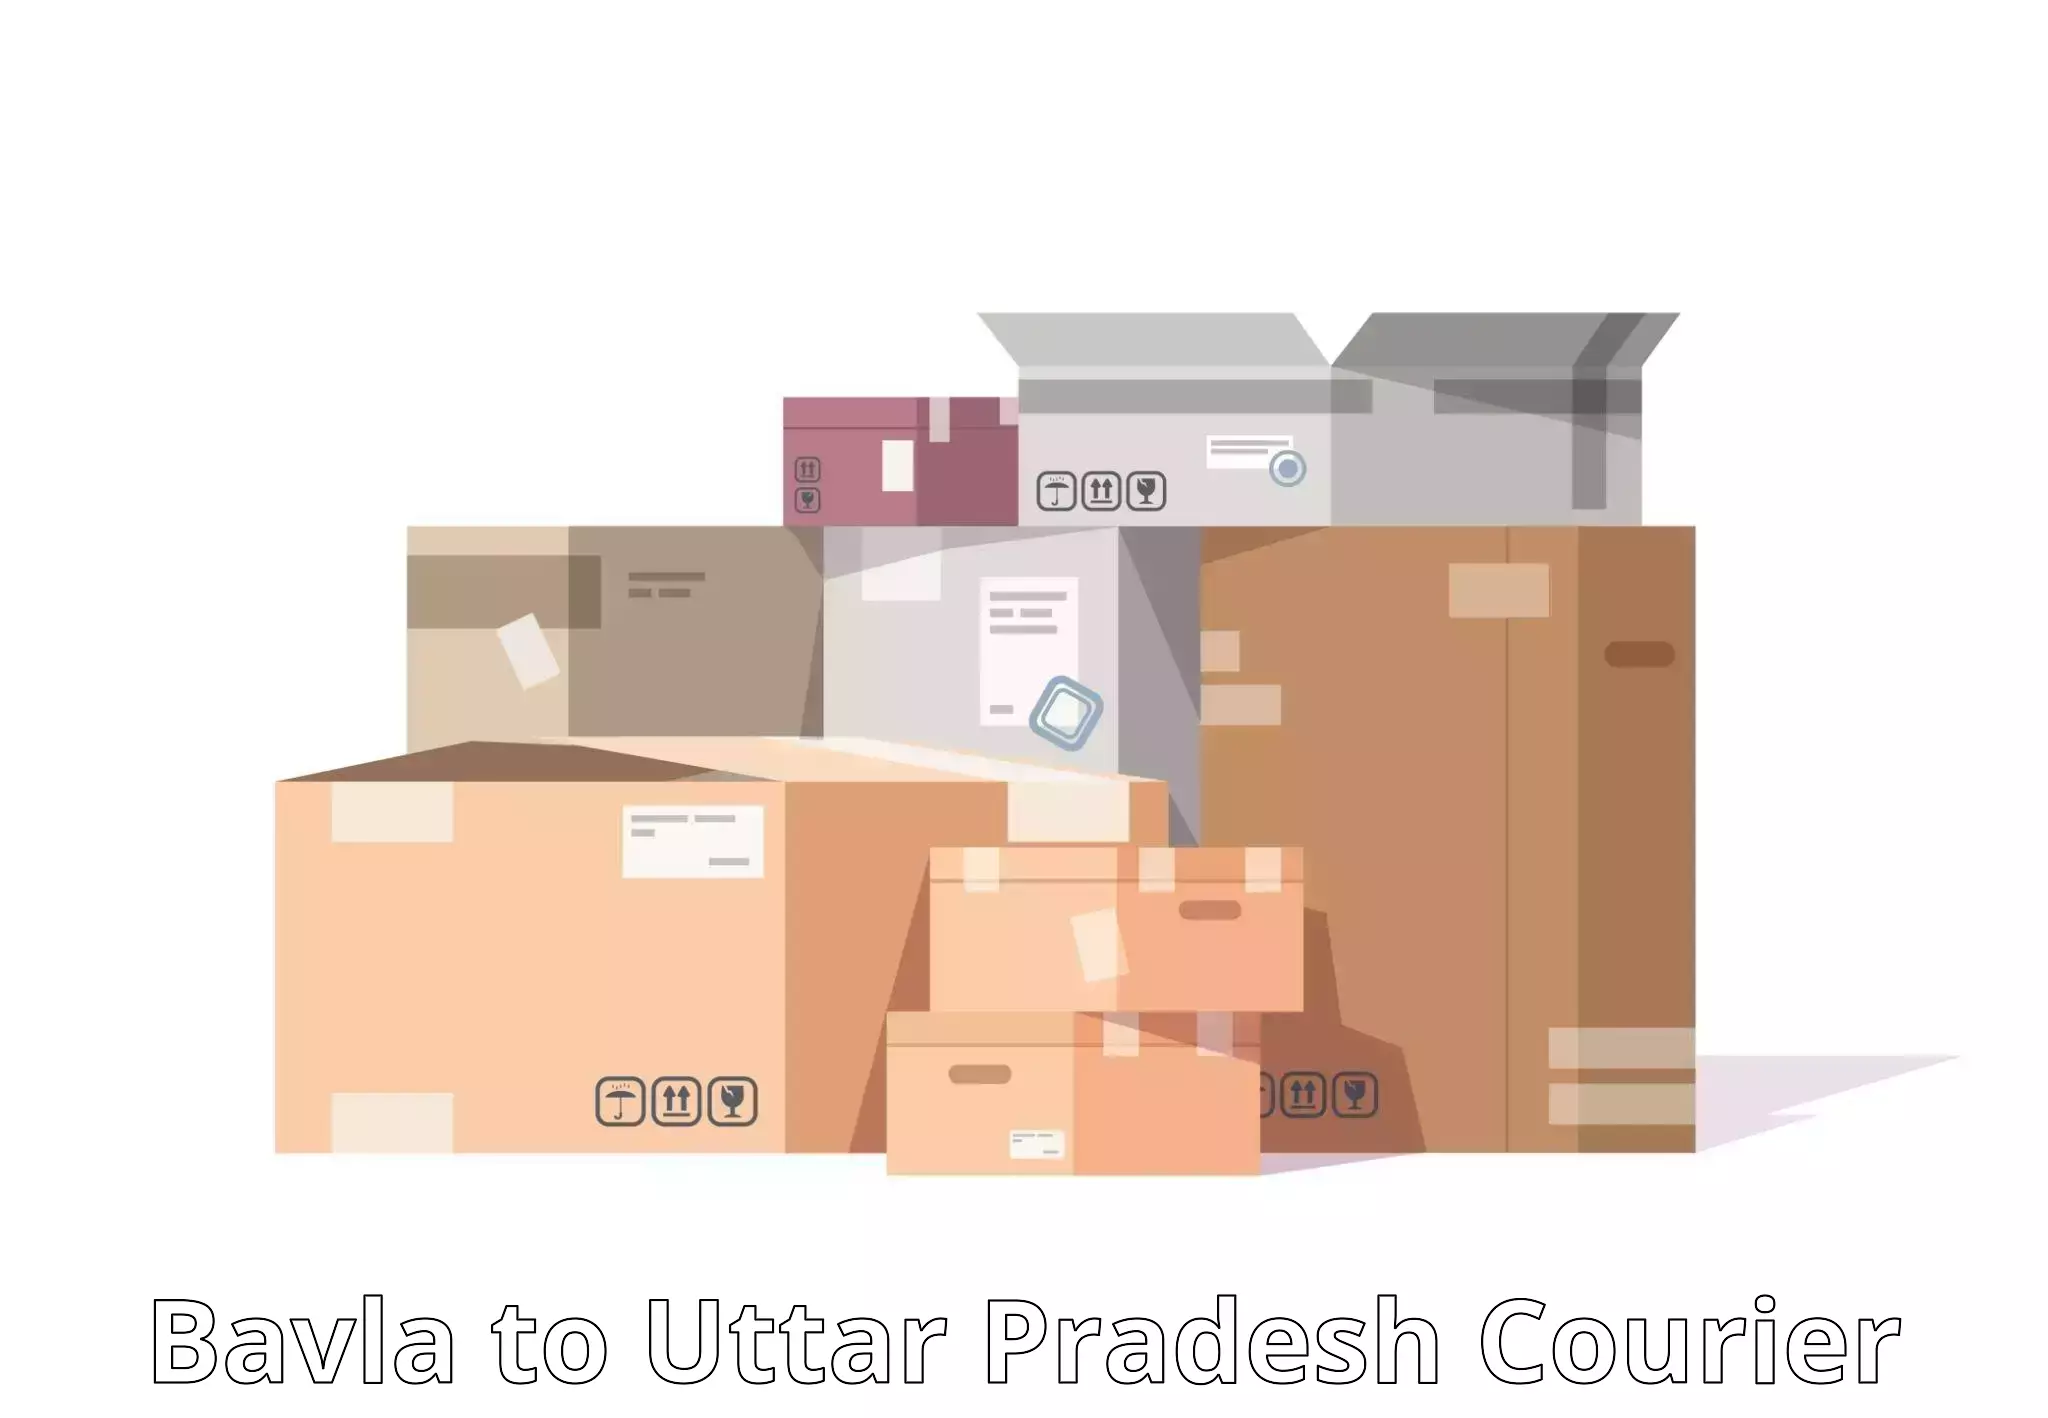 Comprehensive parcel tracking Bavla to Jalesar